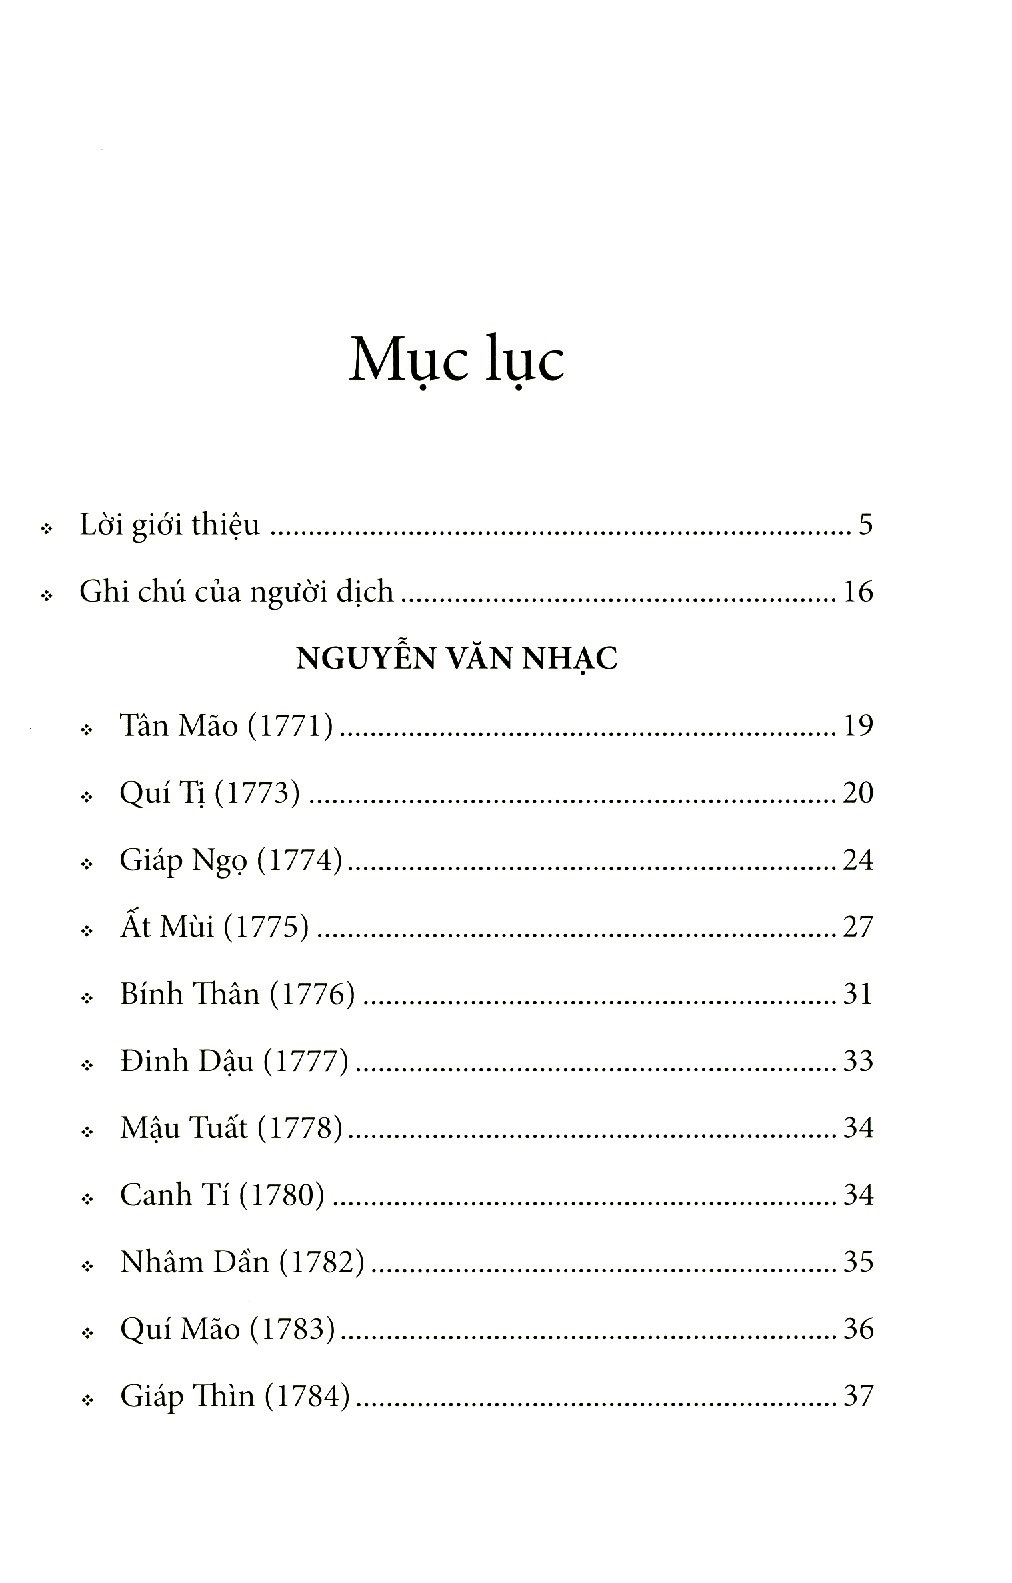 Nguyễn Thị Tây Sơn Ký PDF